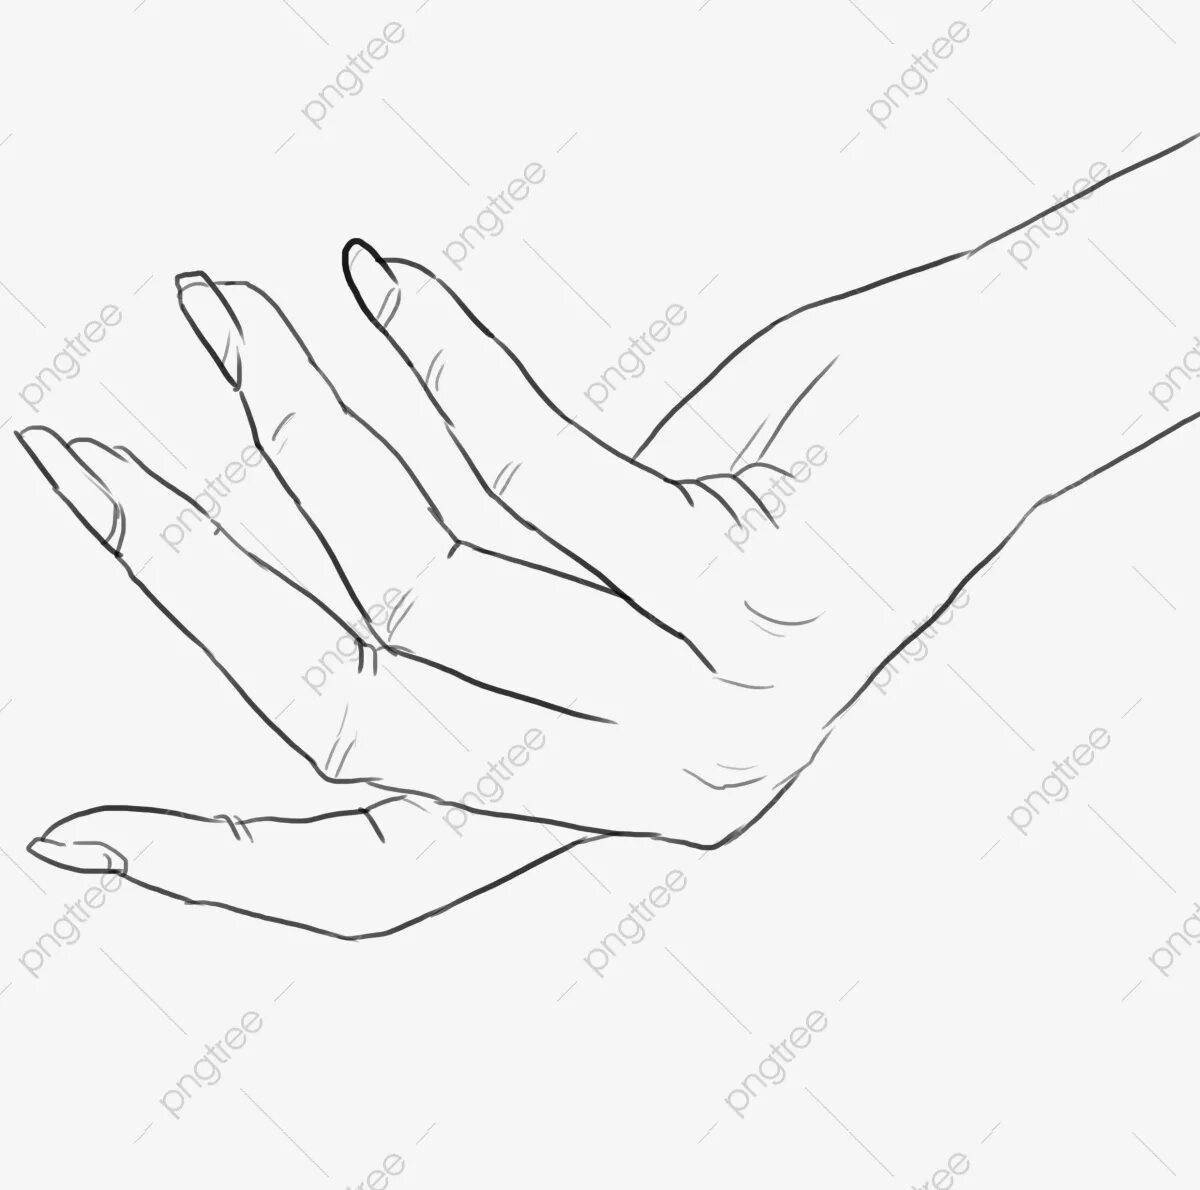 Раскраска элегантная женская рука